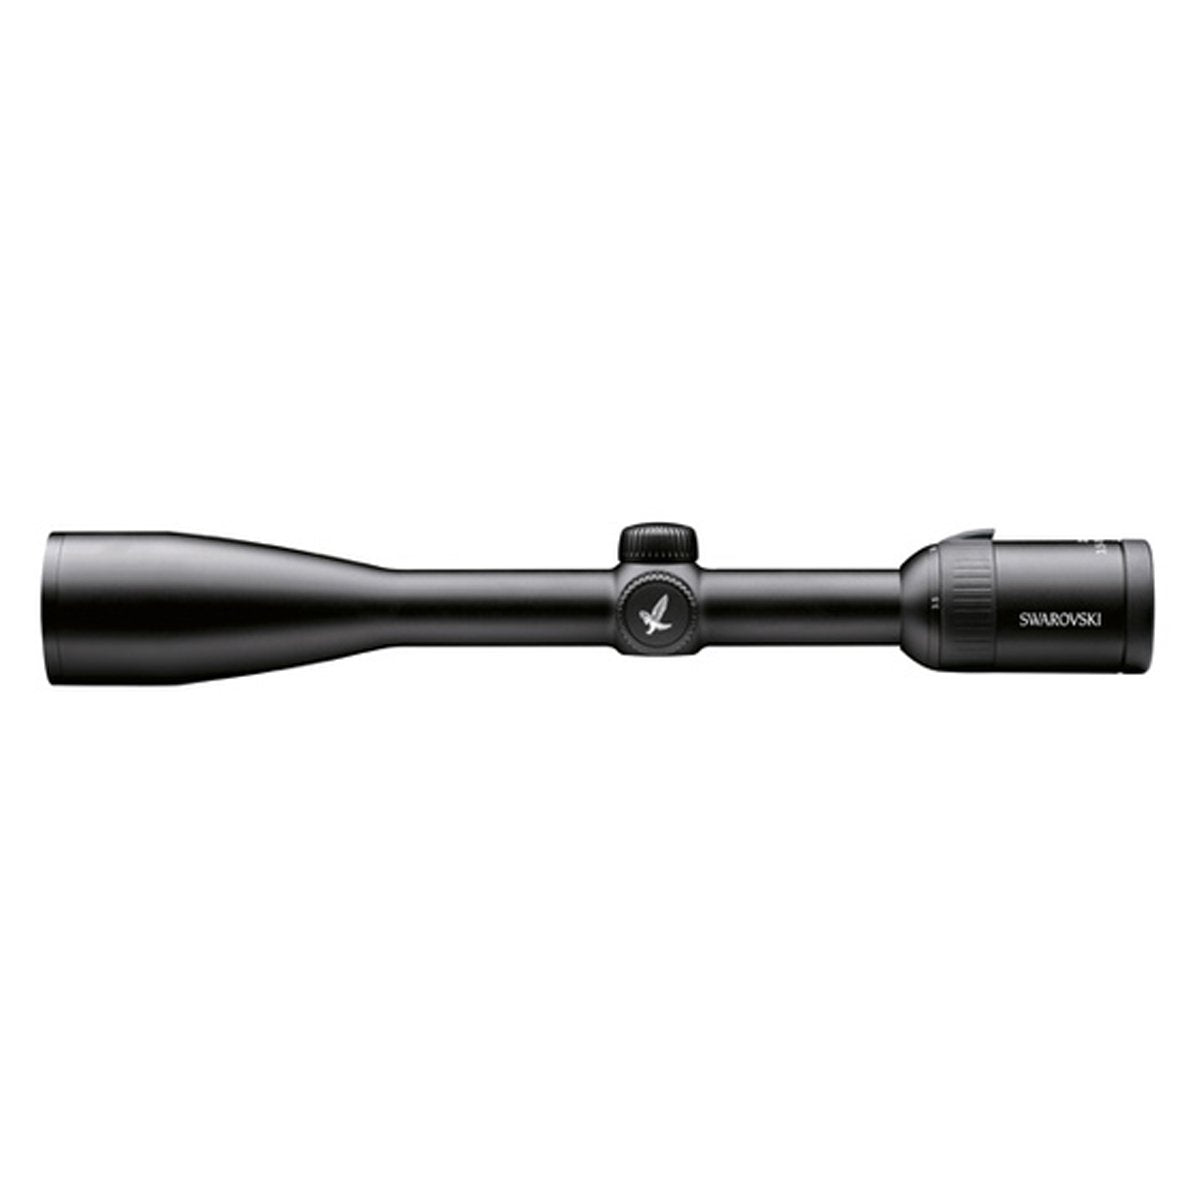 Swarovski Z5 3.5-18x44 P L BRX Riflescope in Swarovski Z5 3.5-18x44 P L BRX Riflescope by Swarovski Optik | Optics - goHUNT Shop by GOHUNT | Swarovski Optik - GOHUNT Shop